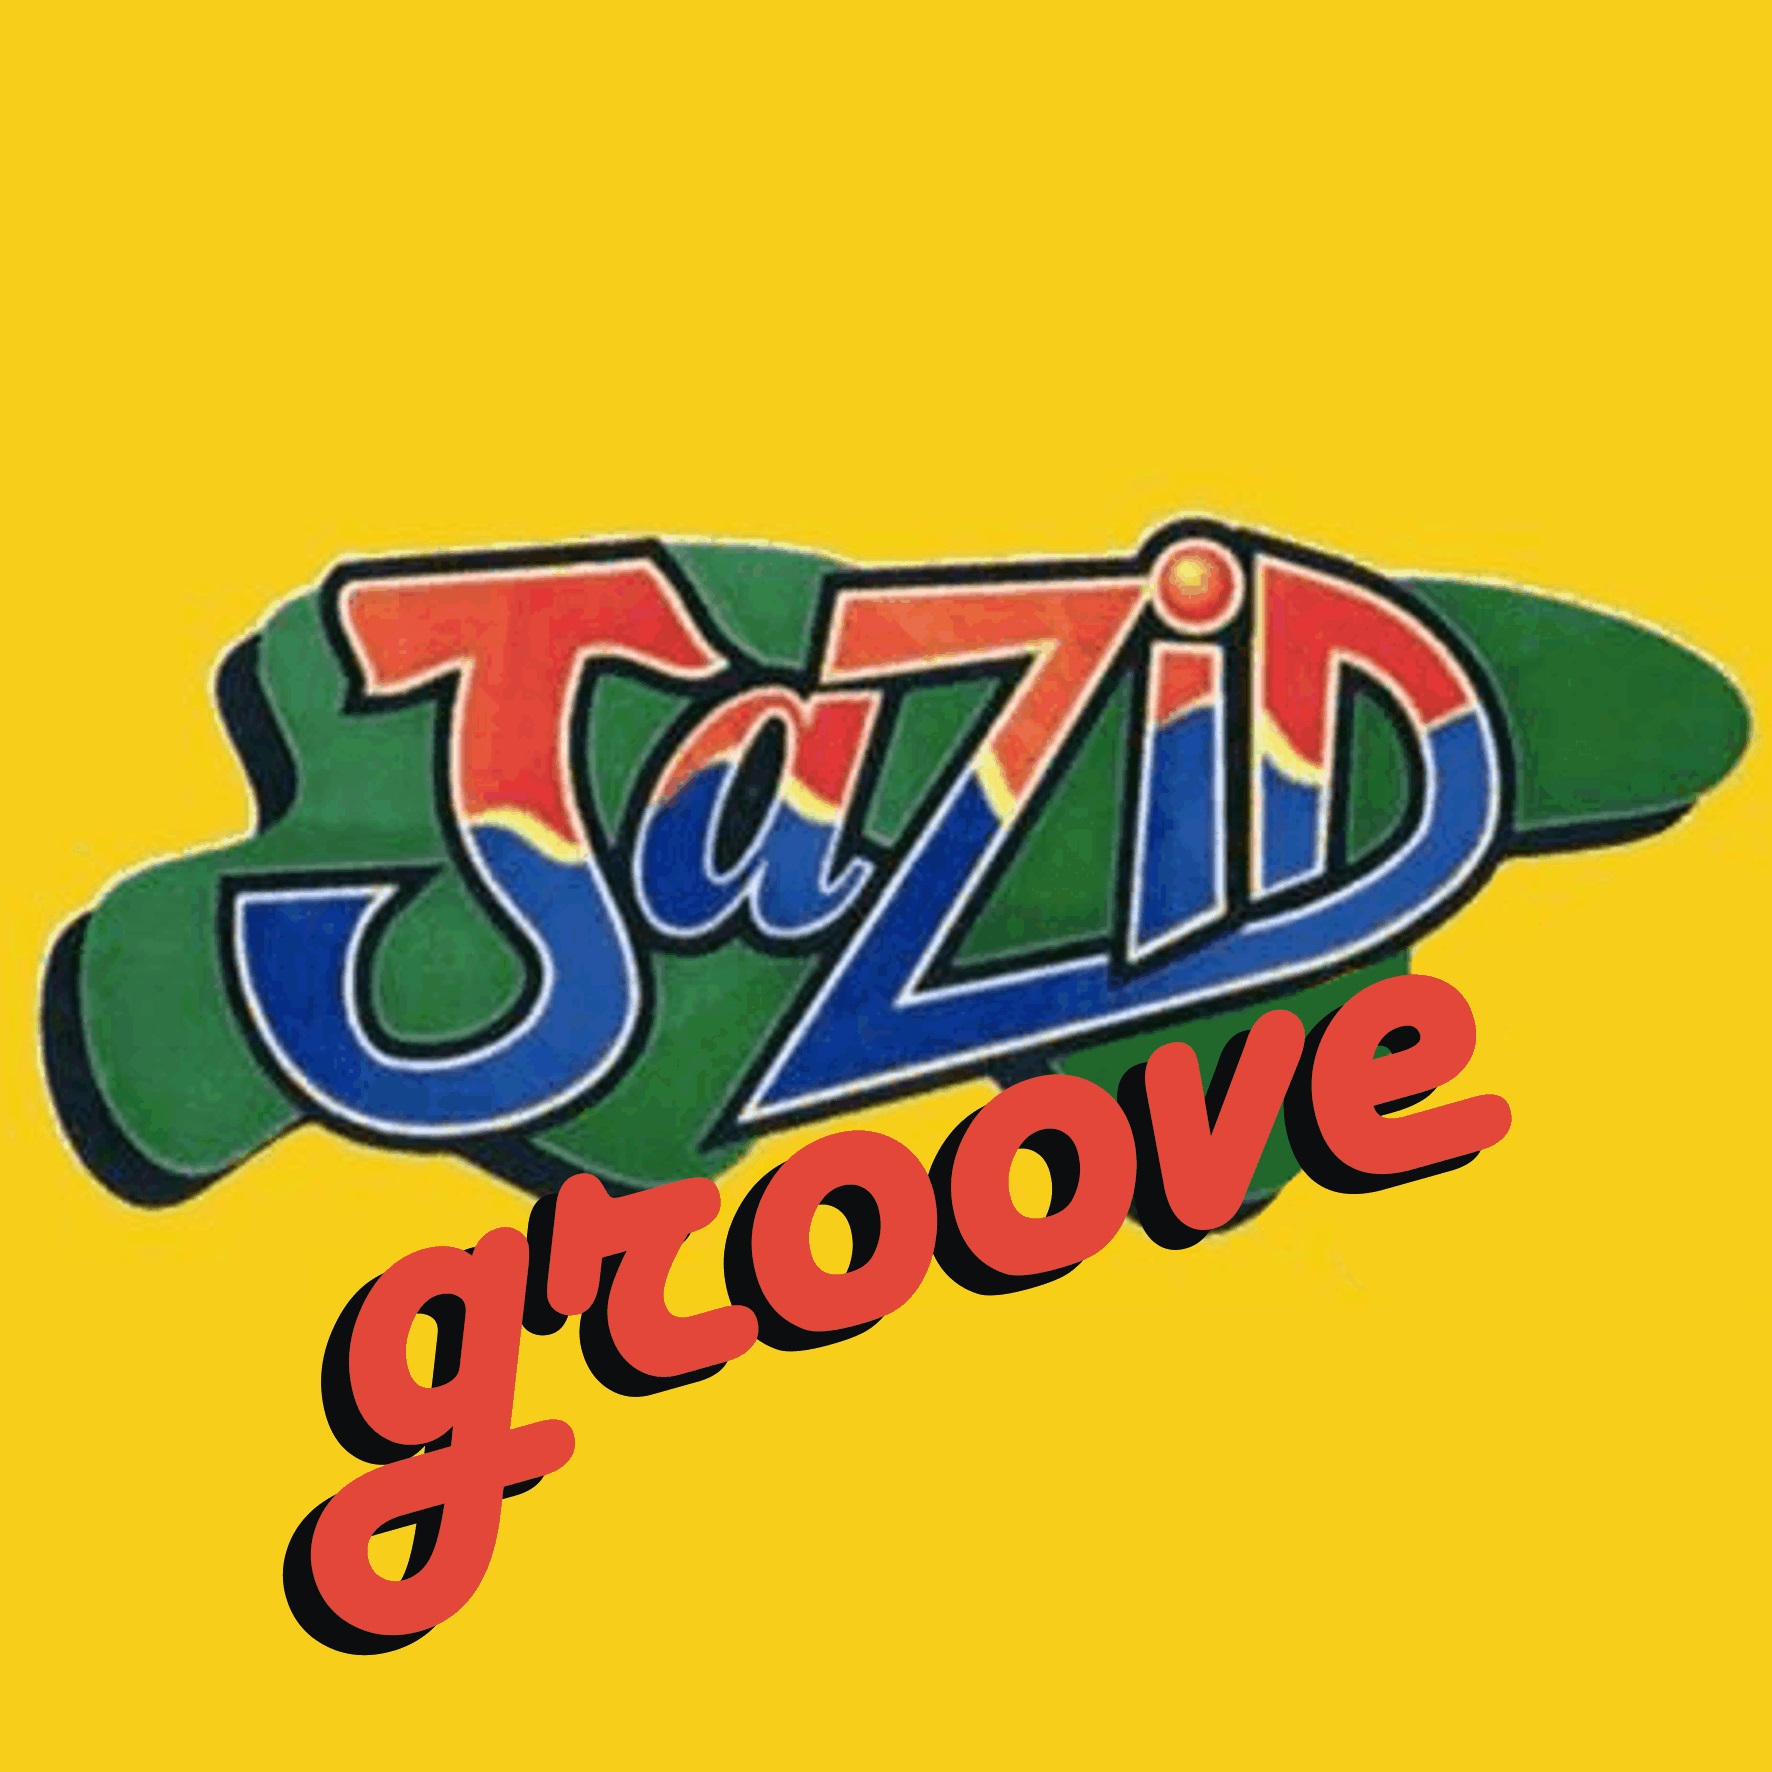 Jazid Groove 68